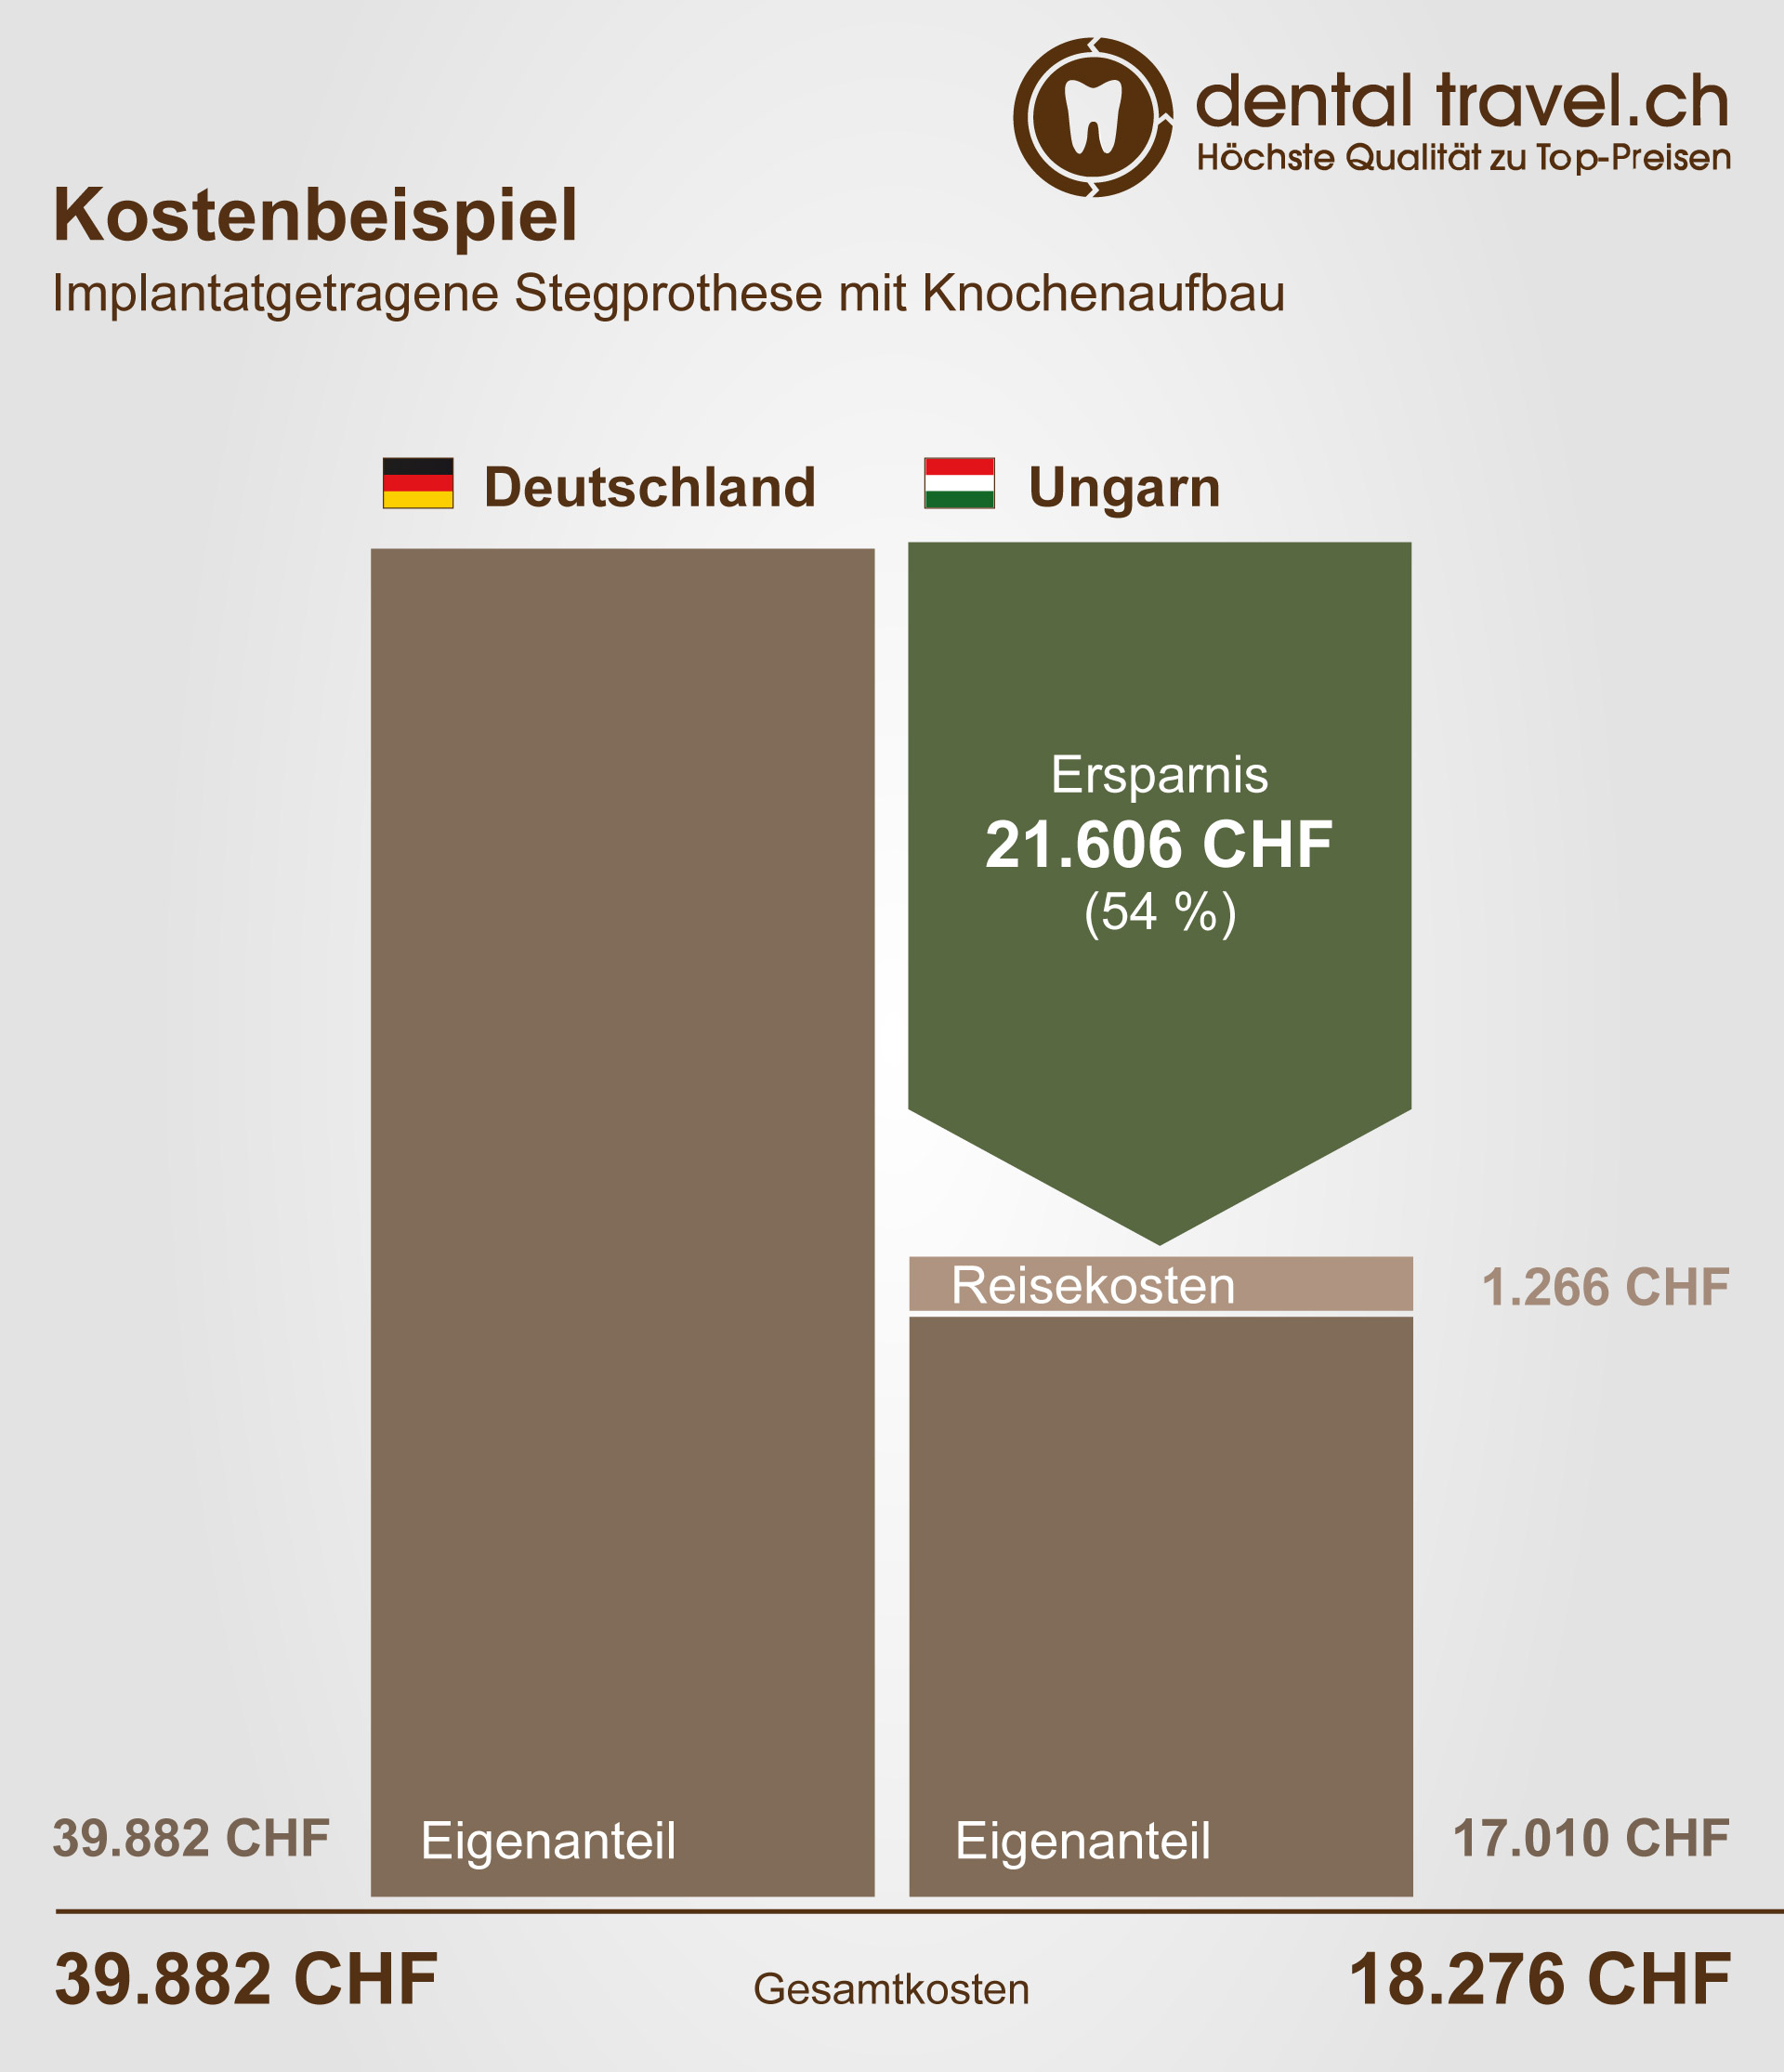 Preisvergleich von implantatgetragenen Stegprothesen mit Knochenaufbau, Schaubild der Kosten in Deutschland und Ungarn